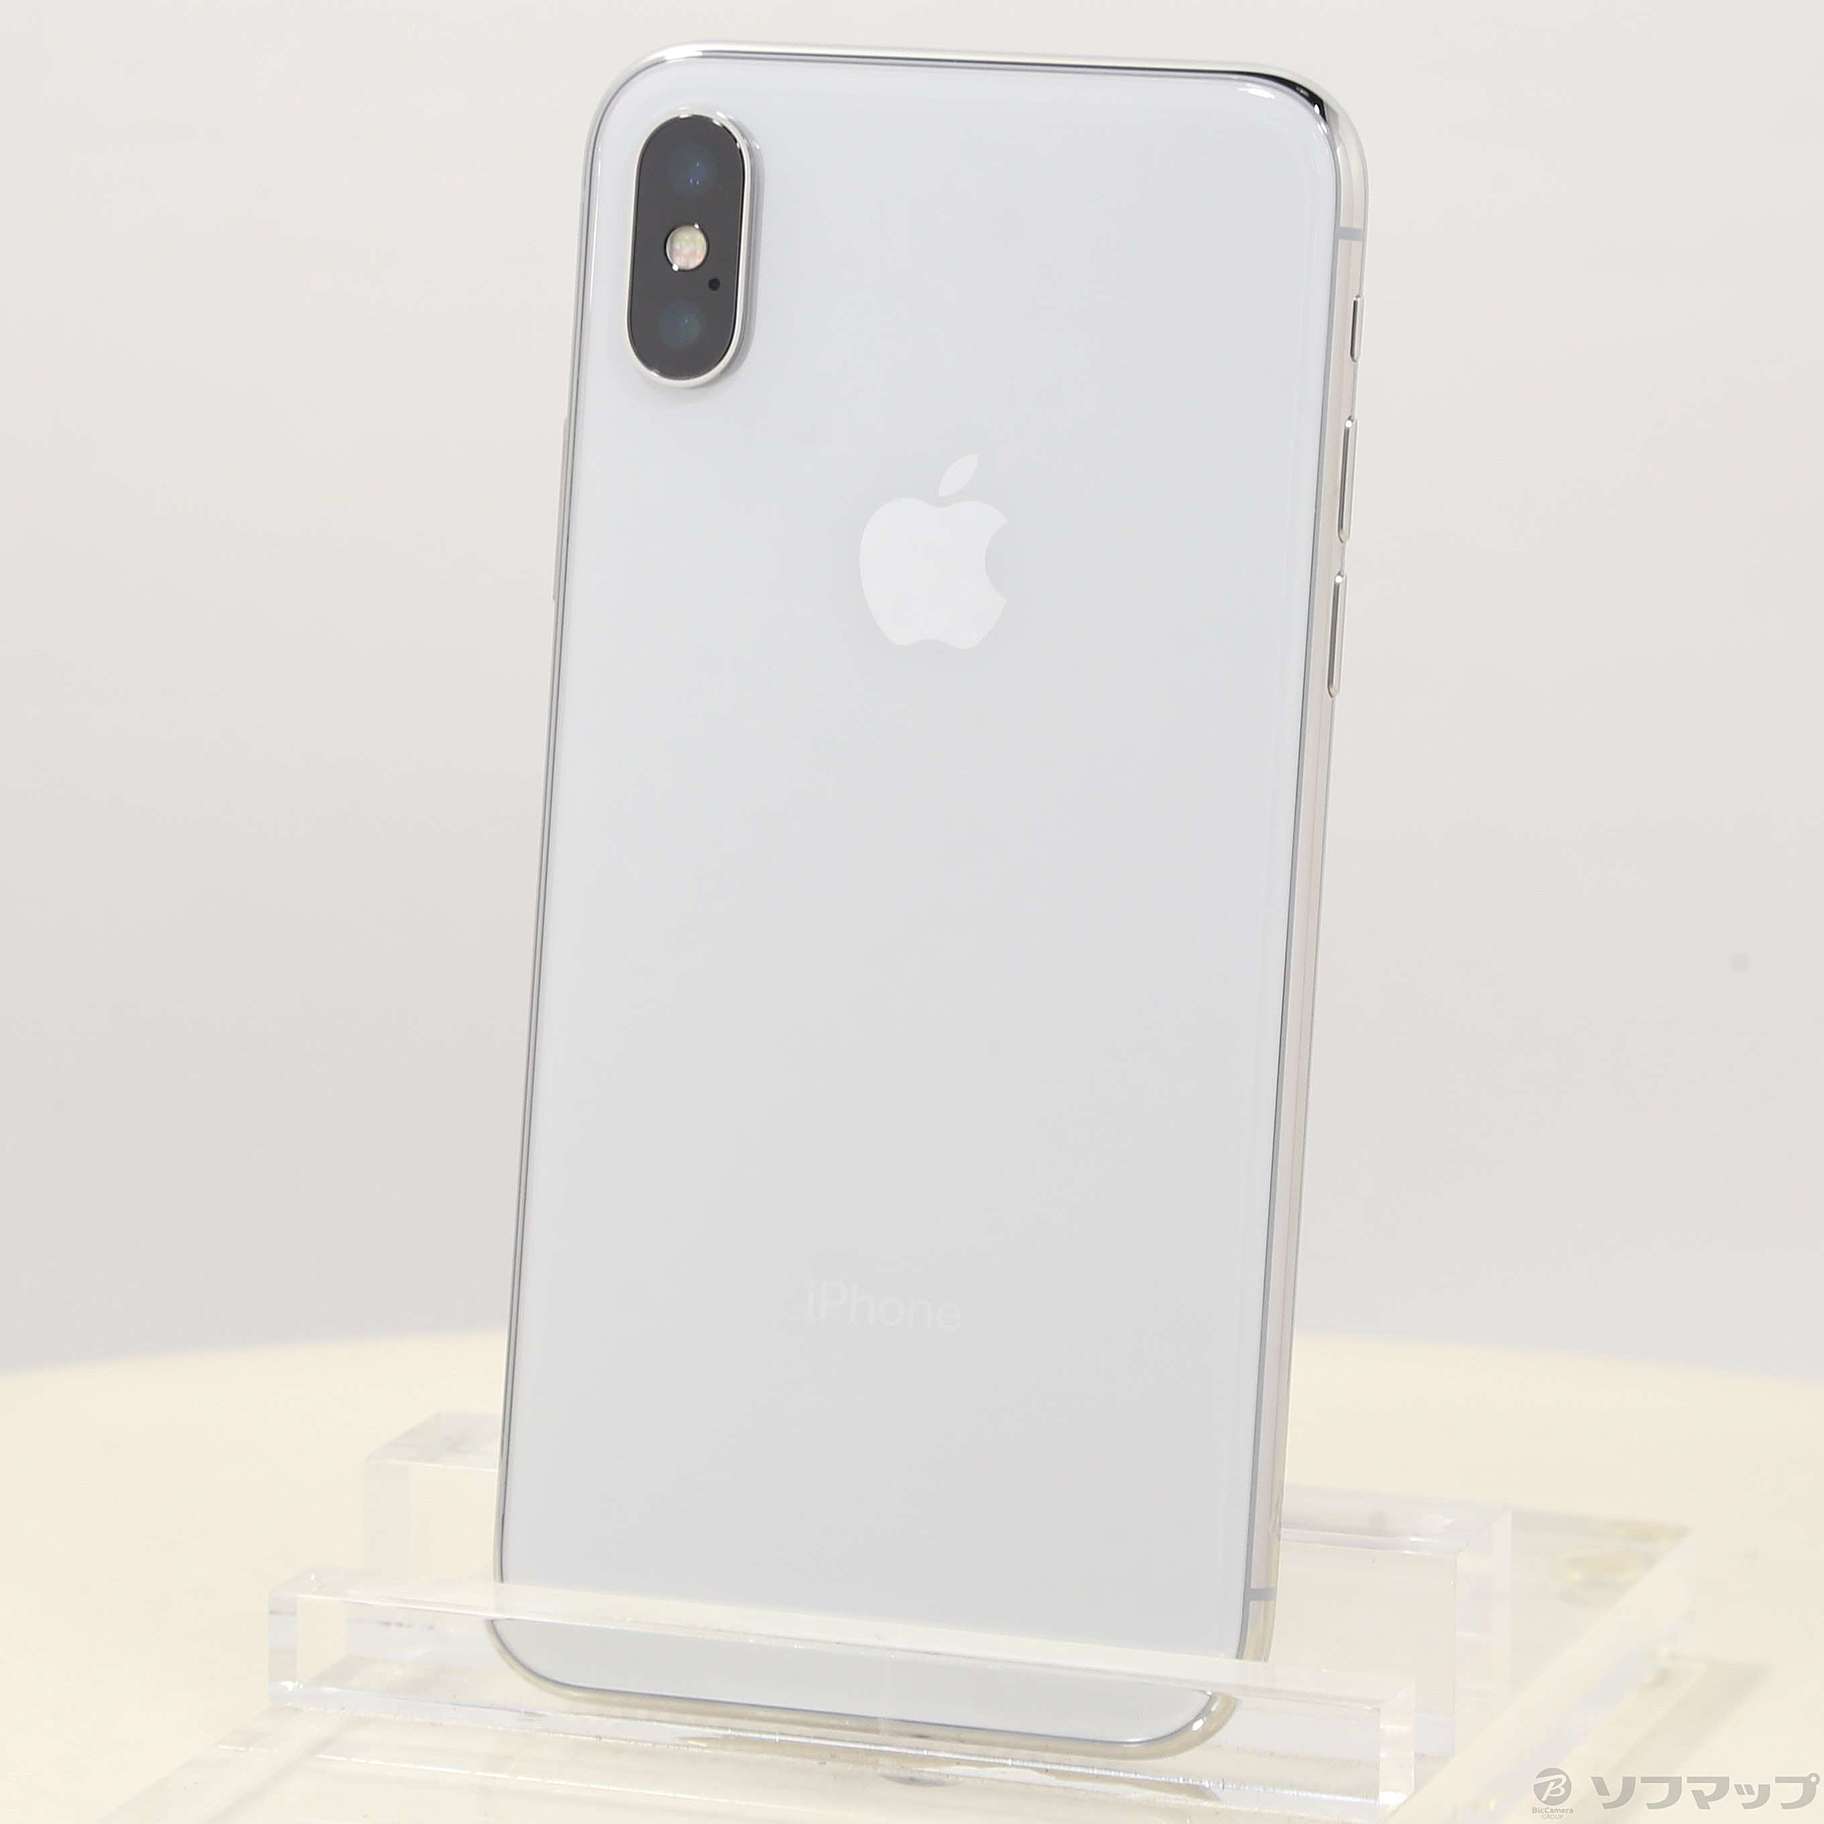 Apple iPhone X 256GB シルバー SIMフリー - スマートフォン/携帯電話